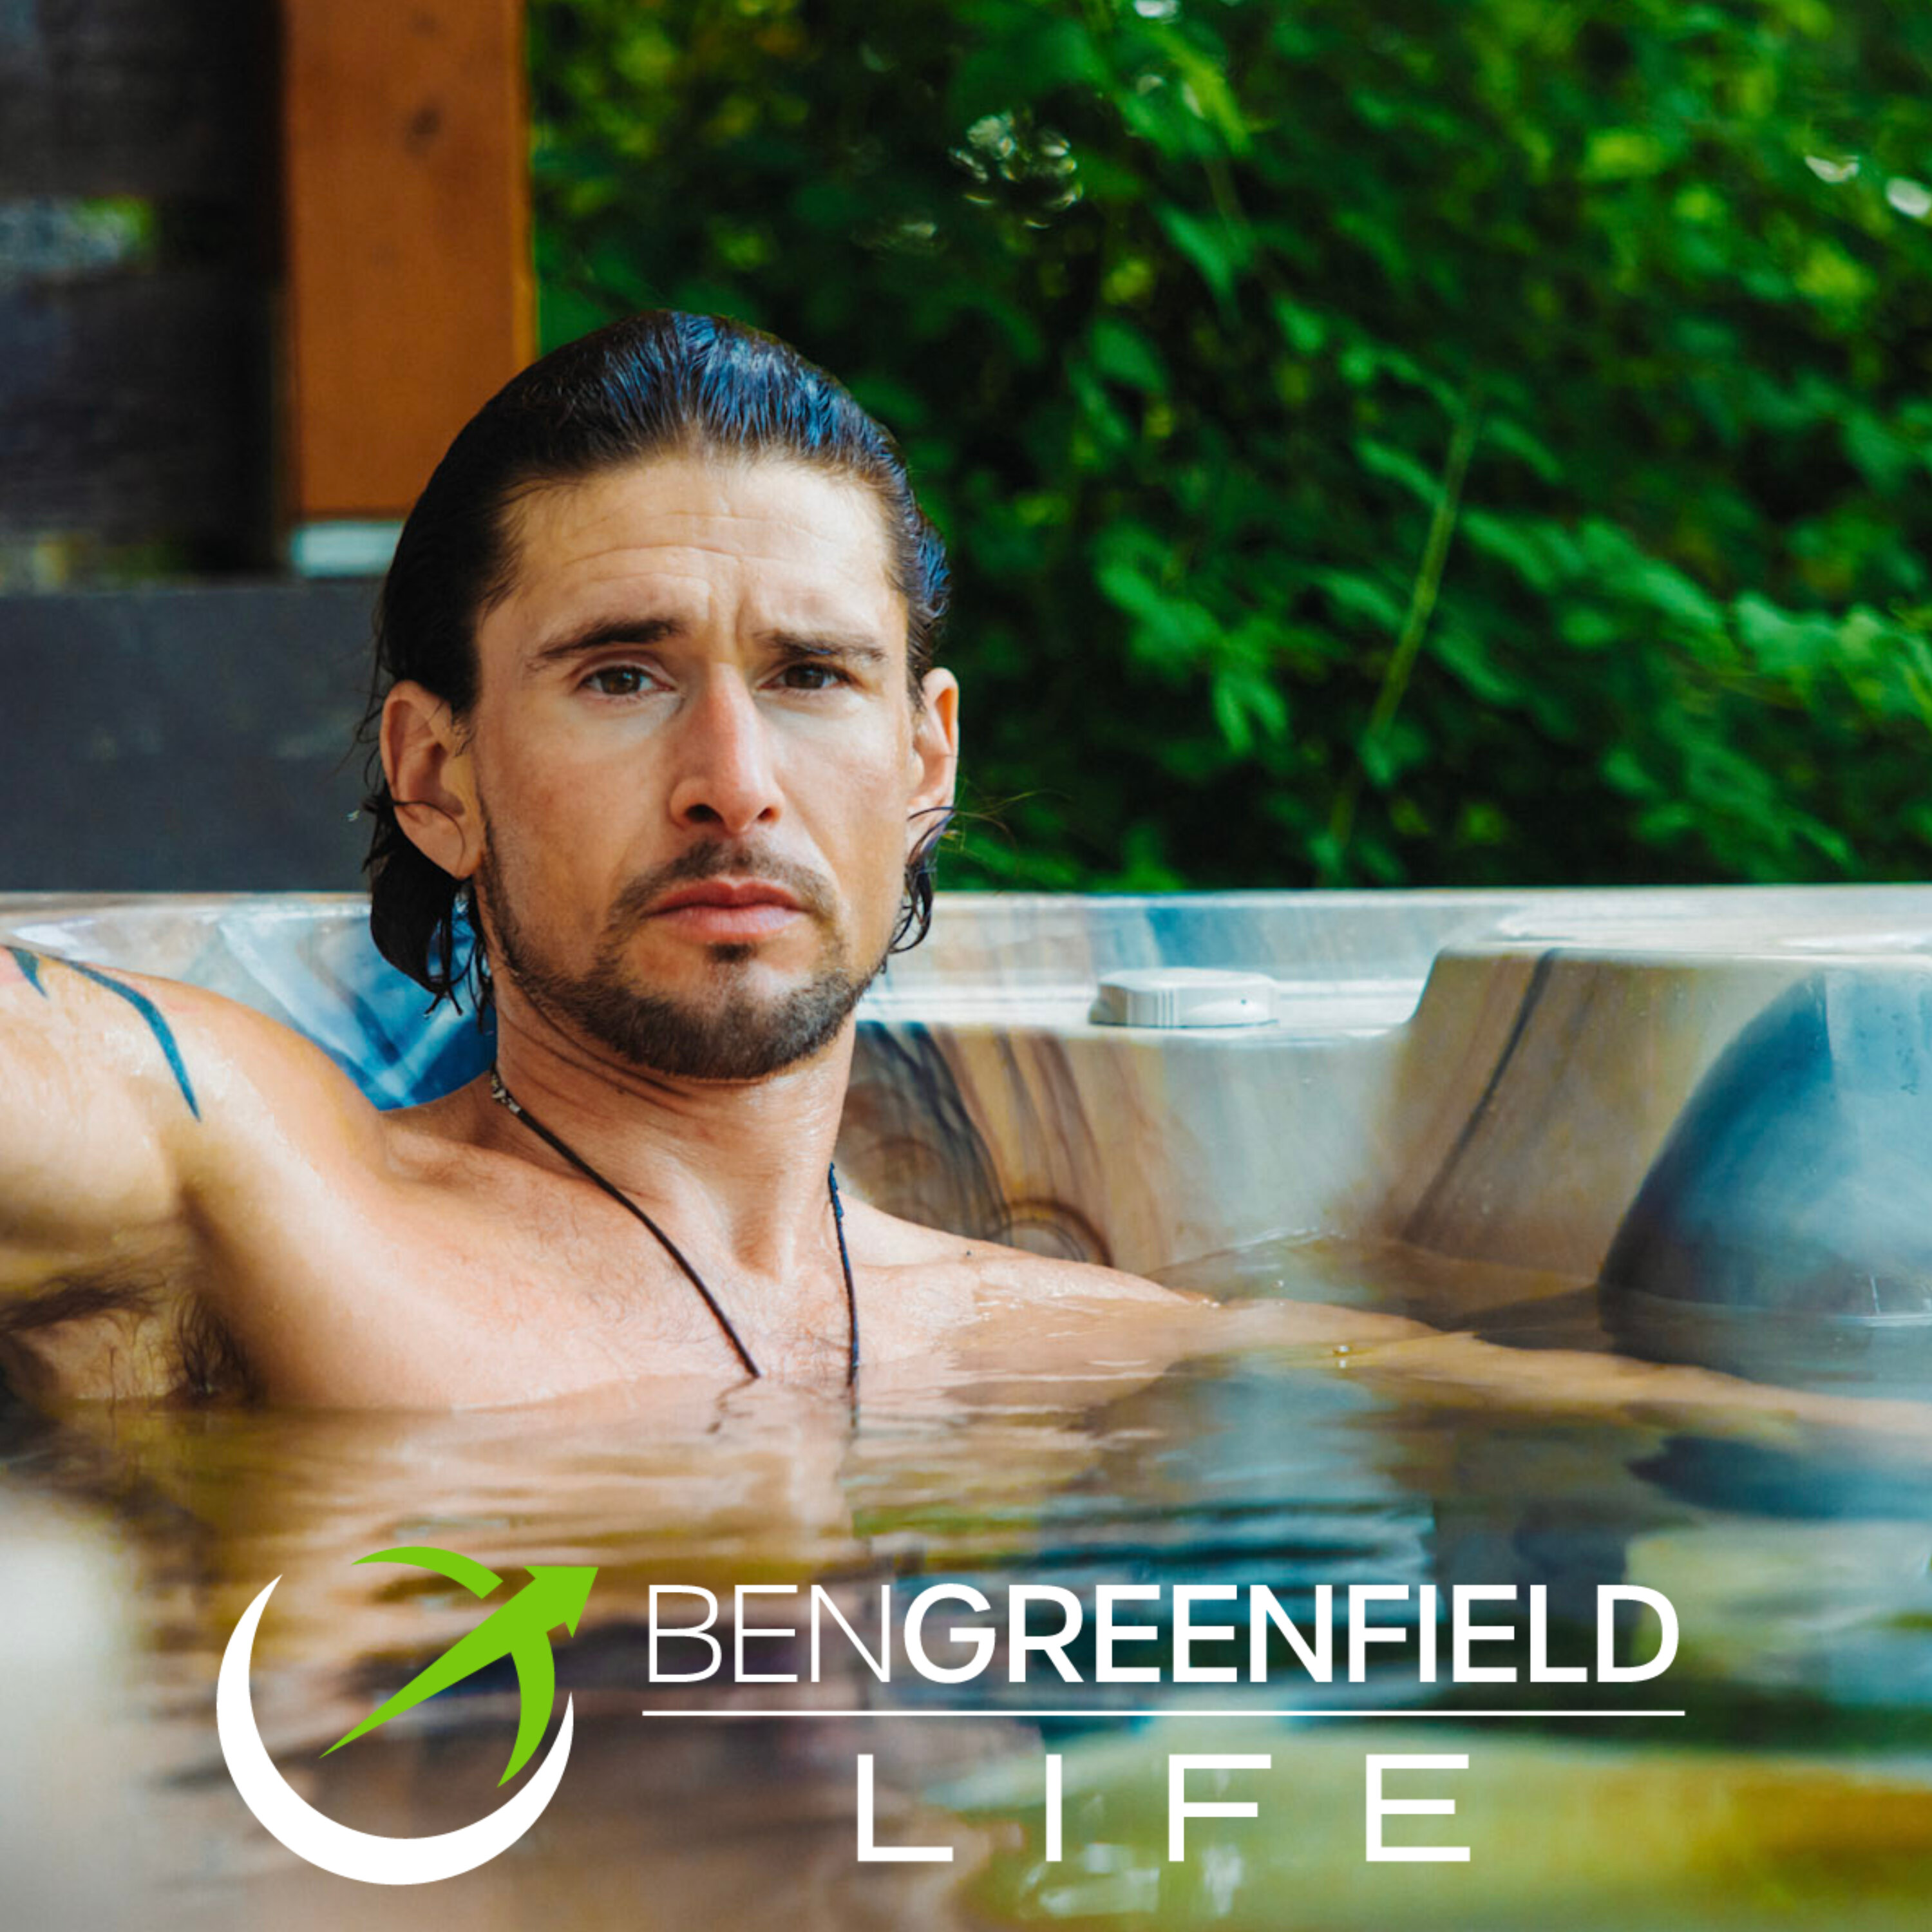 Ben Greenfield Life:Ben Greenfield